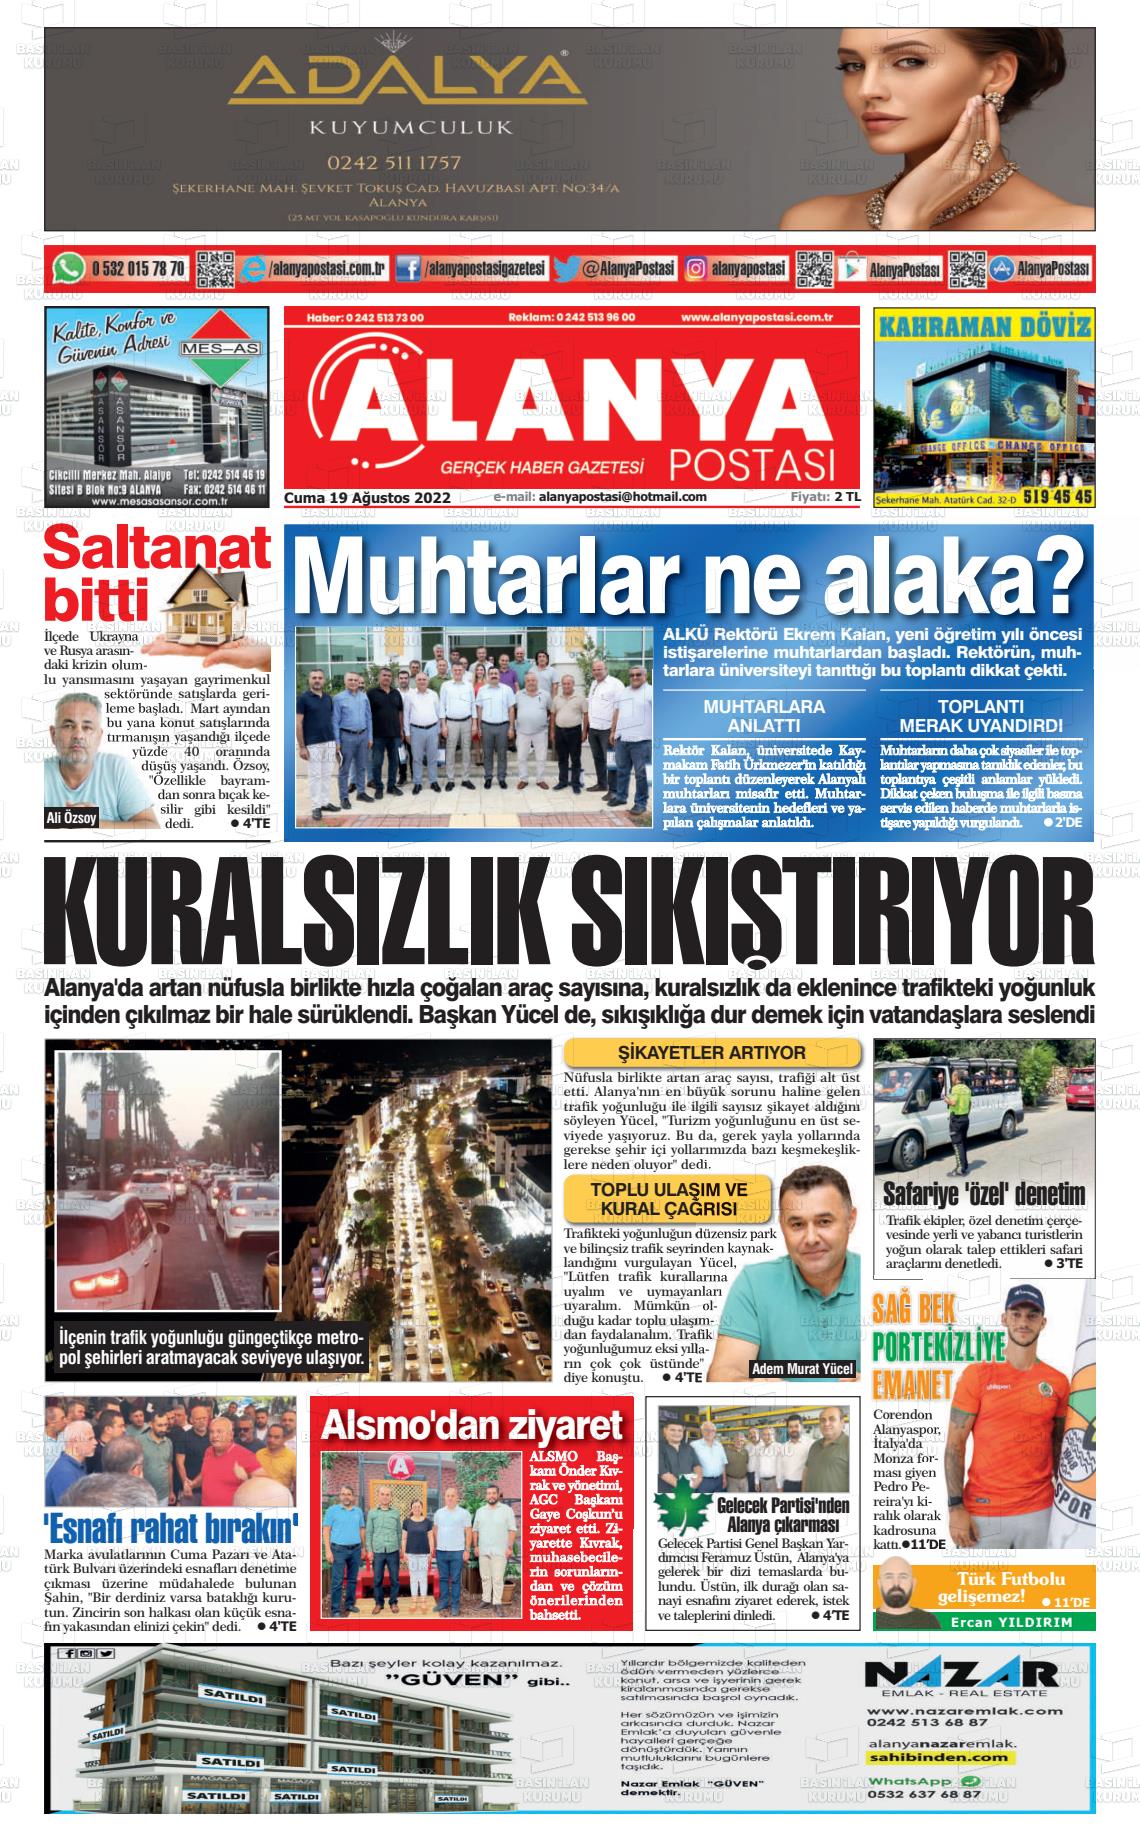 19 Ağustos 2022 Alanya Postası Gazete Manşeti